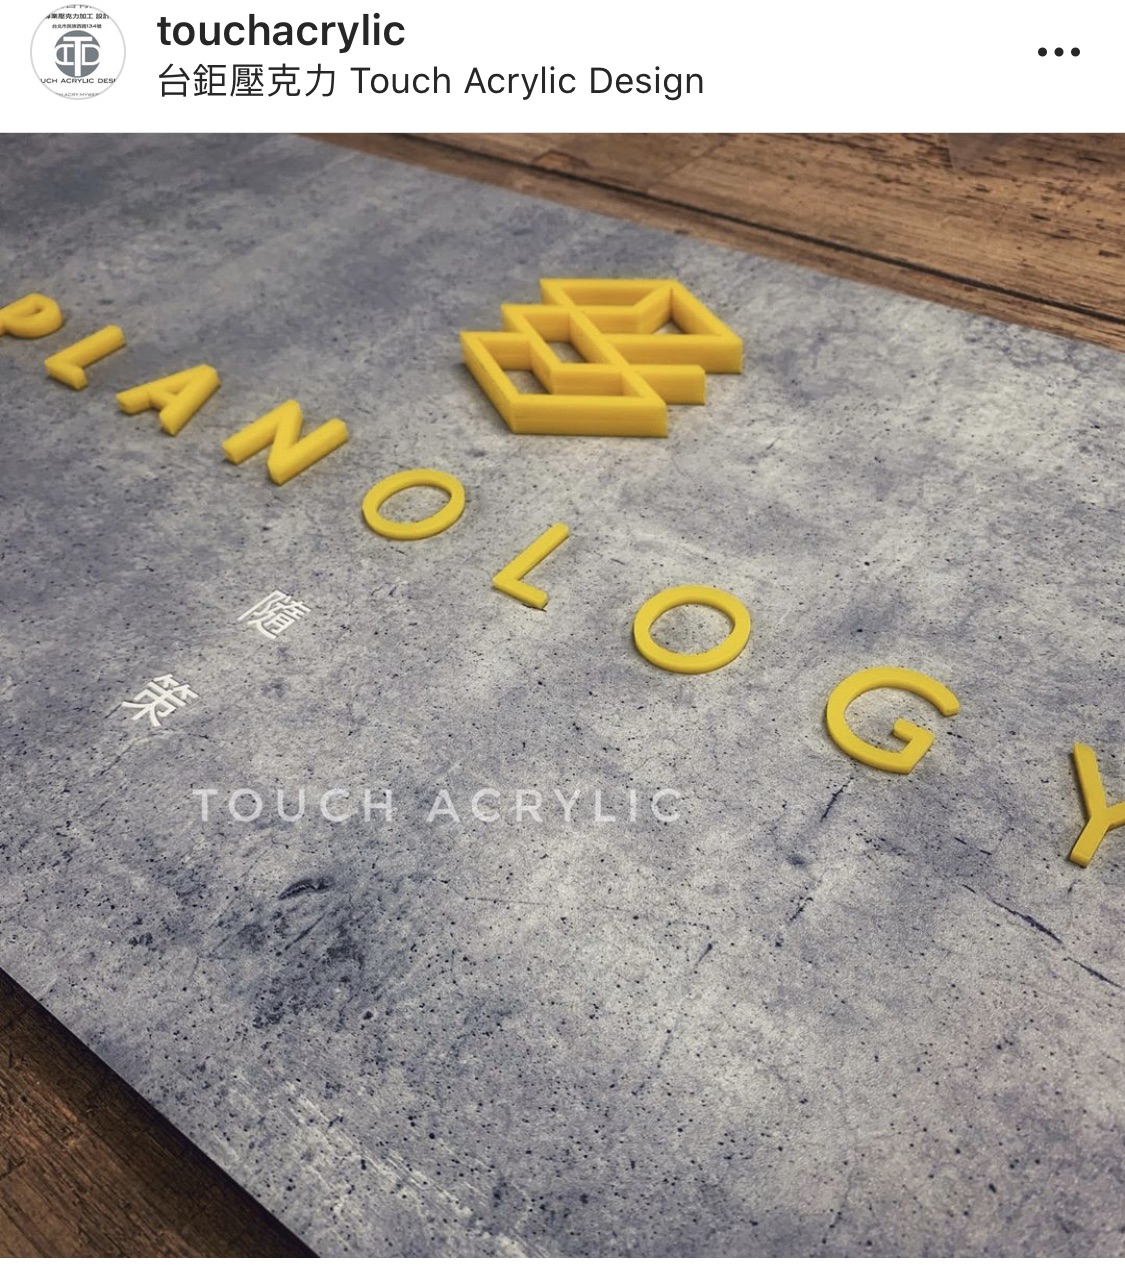 台鉅廣告有限公司 Touch Acrylic Design (壓克力展示架,壓克力盒,壓克力訂做-台鉅廣告)